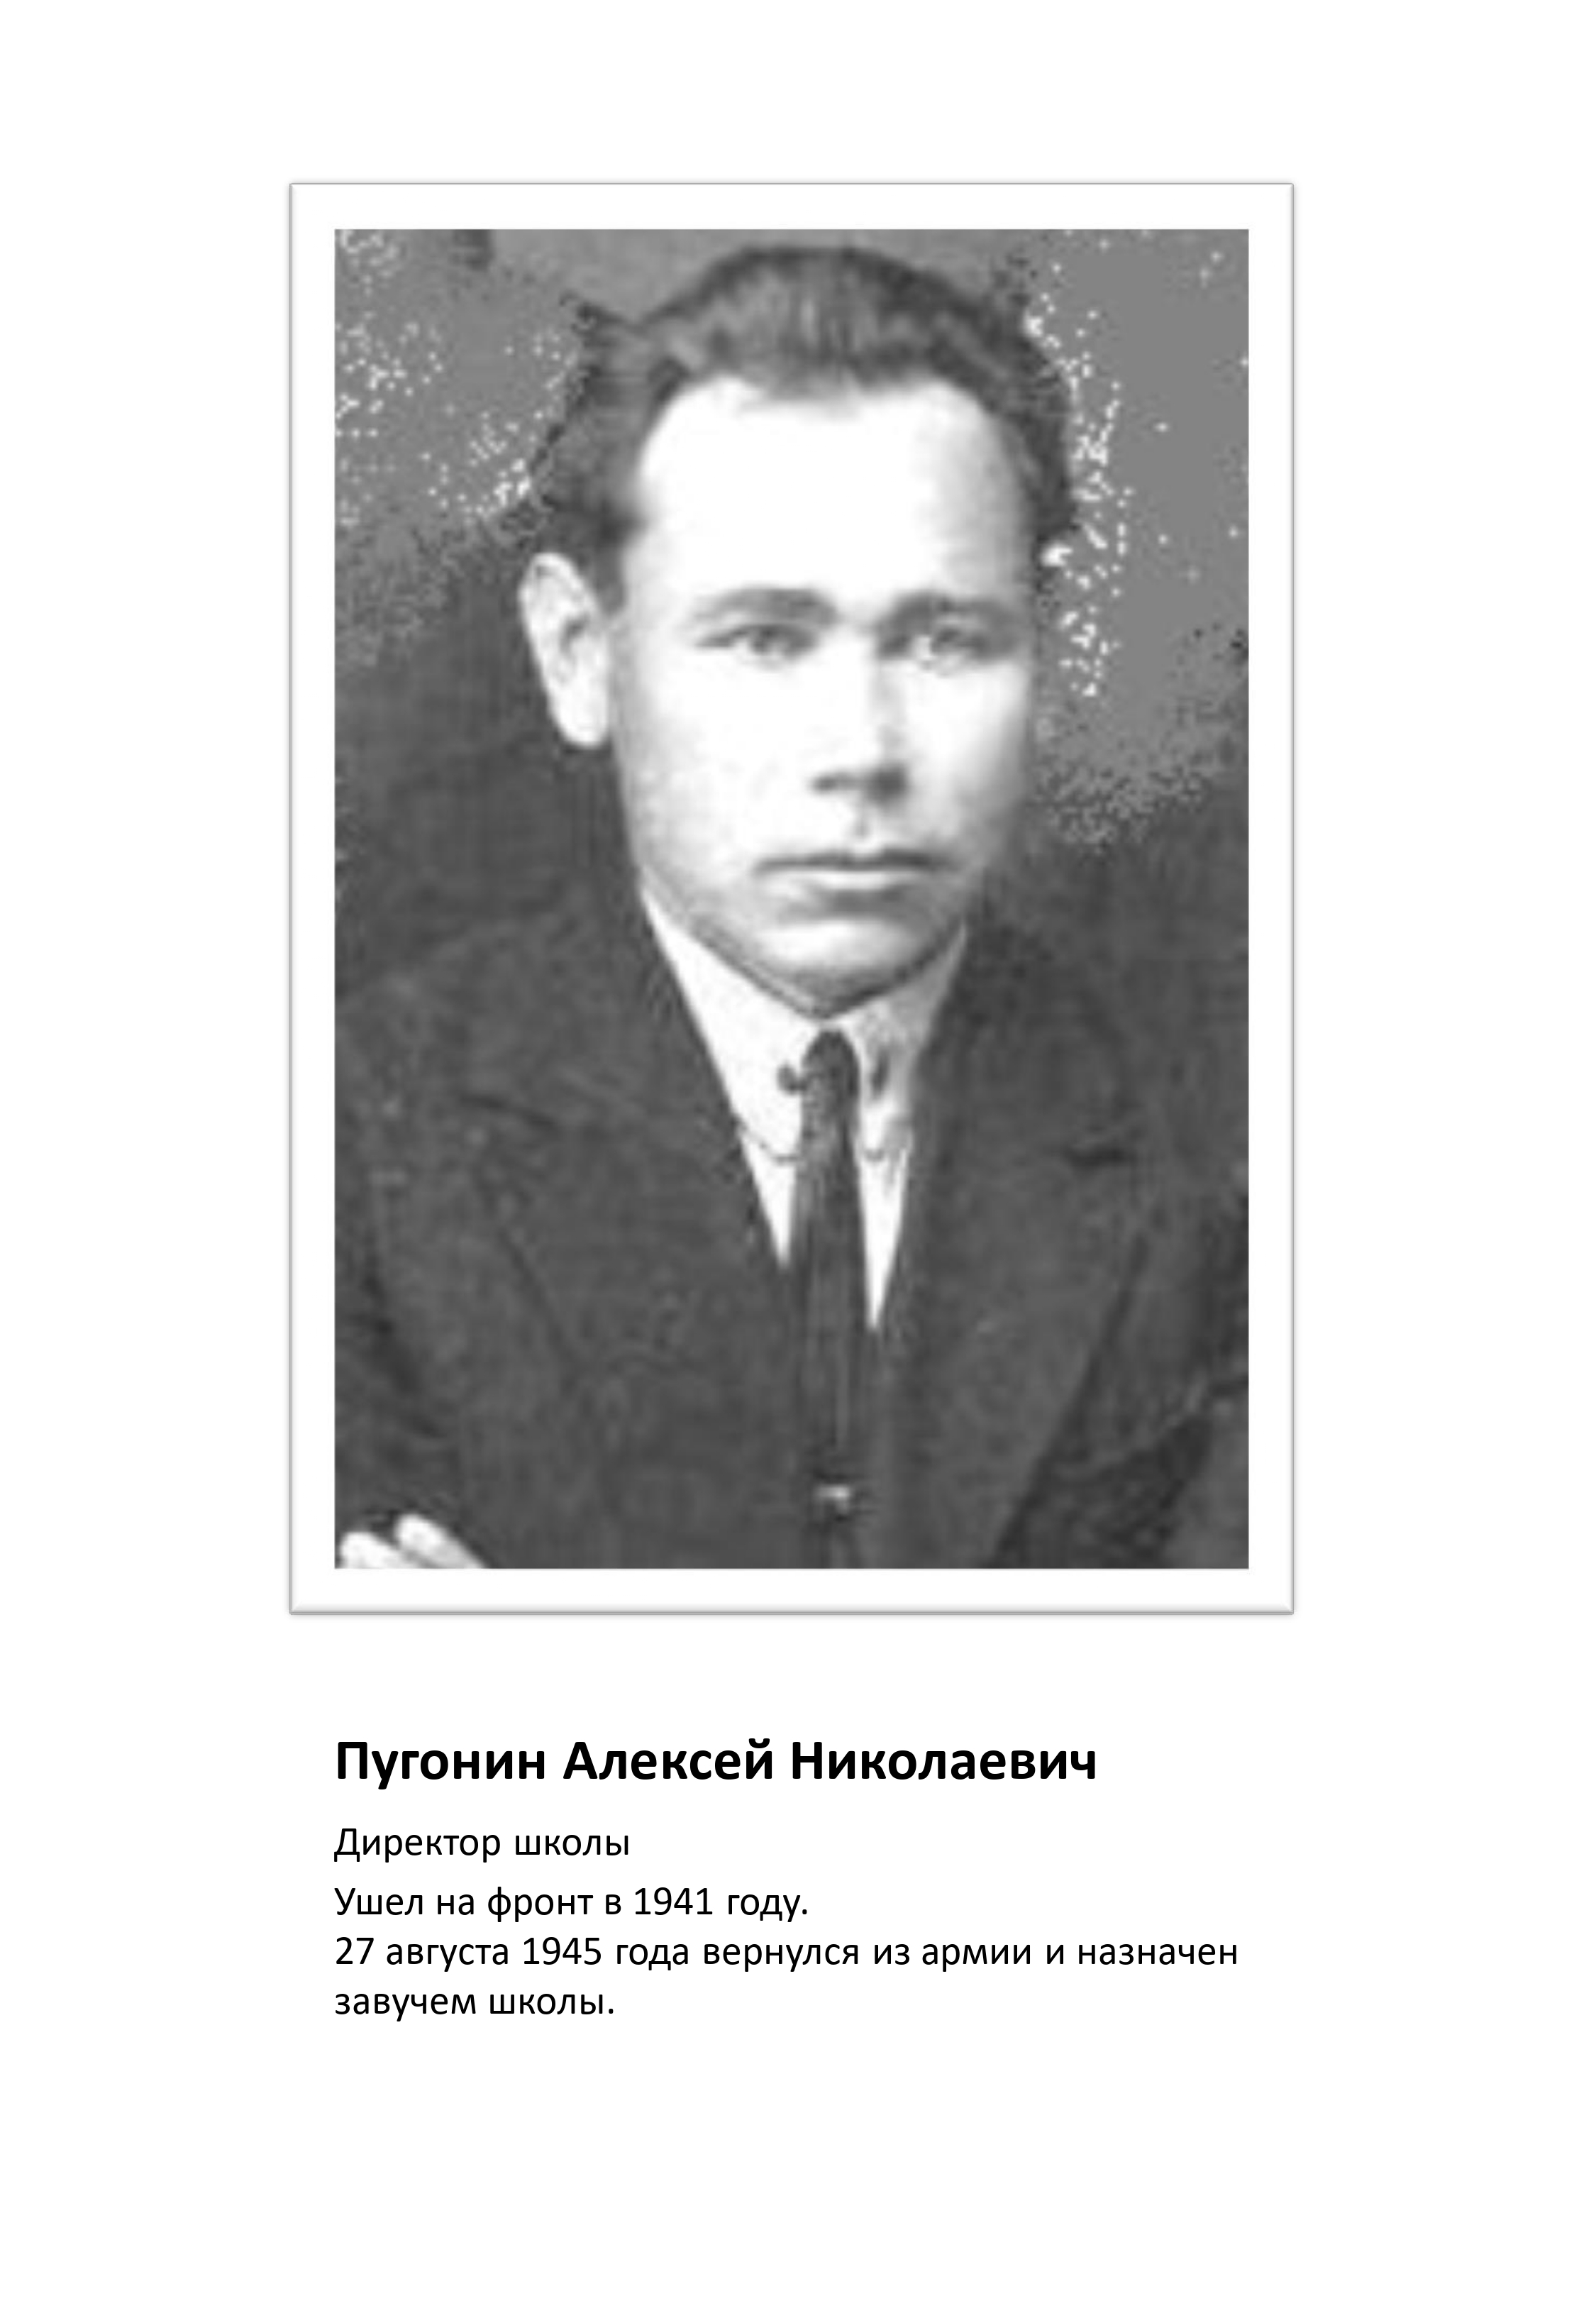 Директор школы Пугонин Алексей Николаевич в 1941 году ушел на фронт.